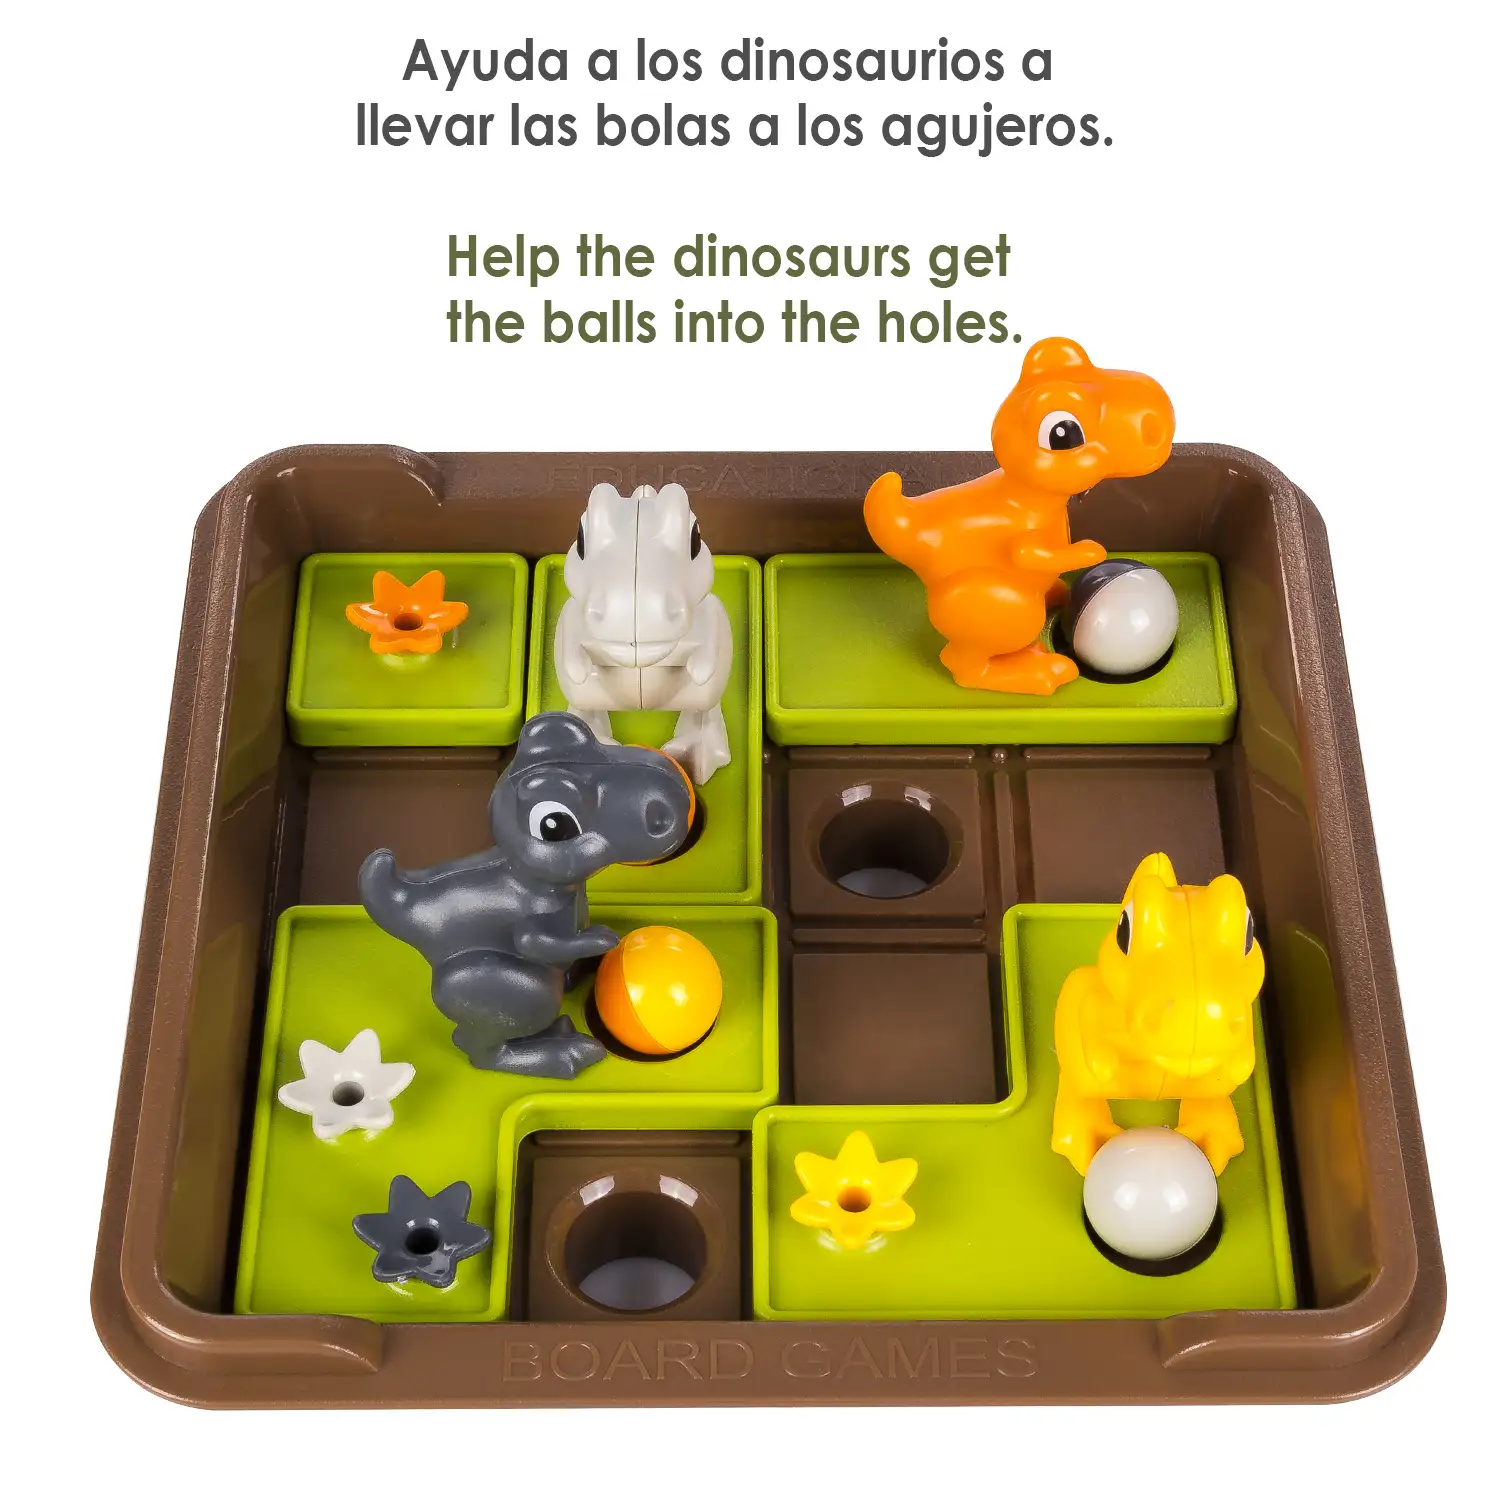 Desafío Dinosaurios. Juego de mesa de habilidad para 1 jugador. 60 desafíos en 5 niveles de dificultad.